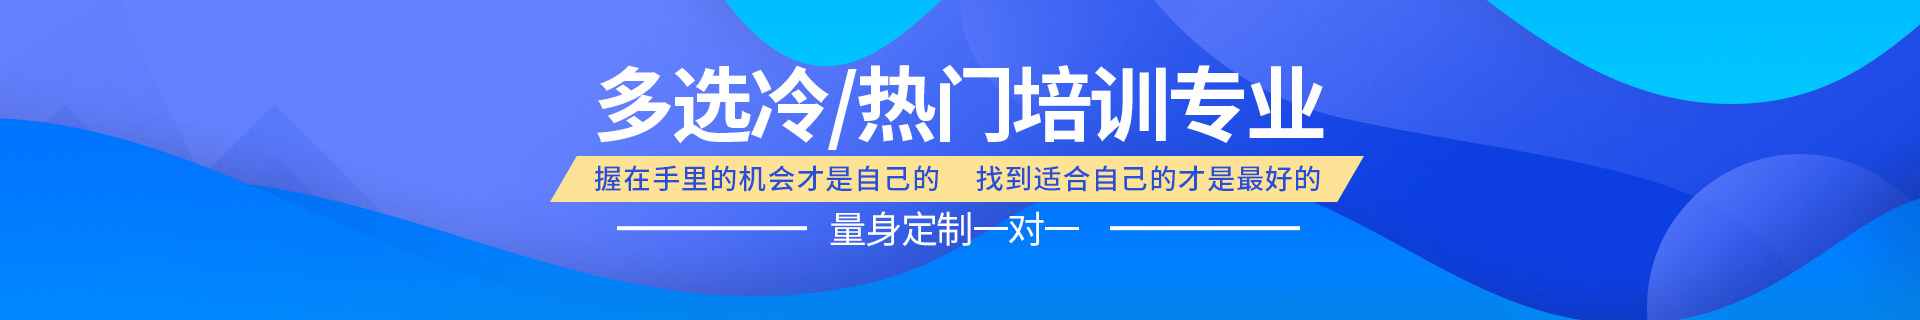 邢台桥东区励学个性化教育